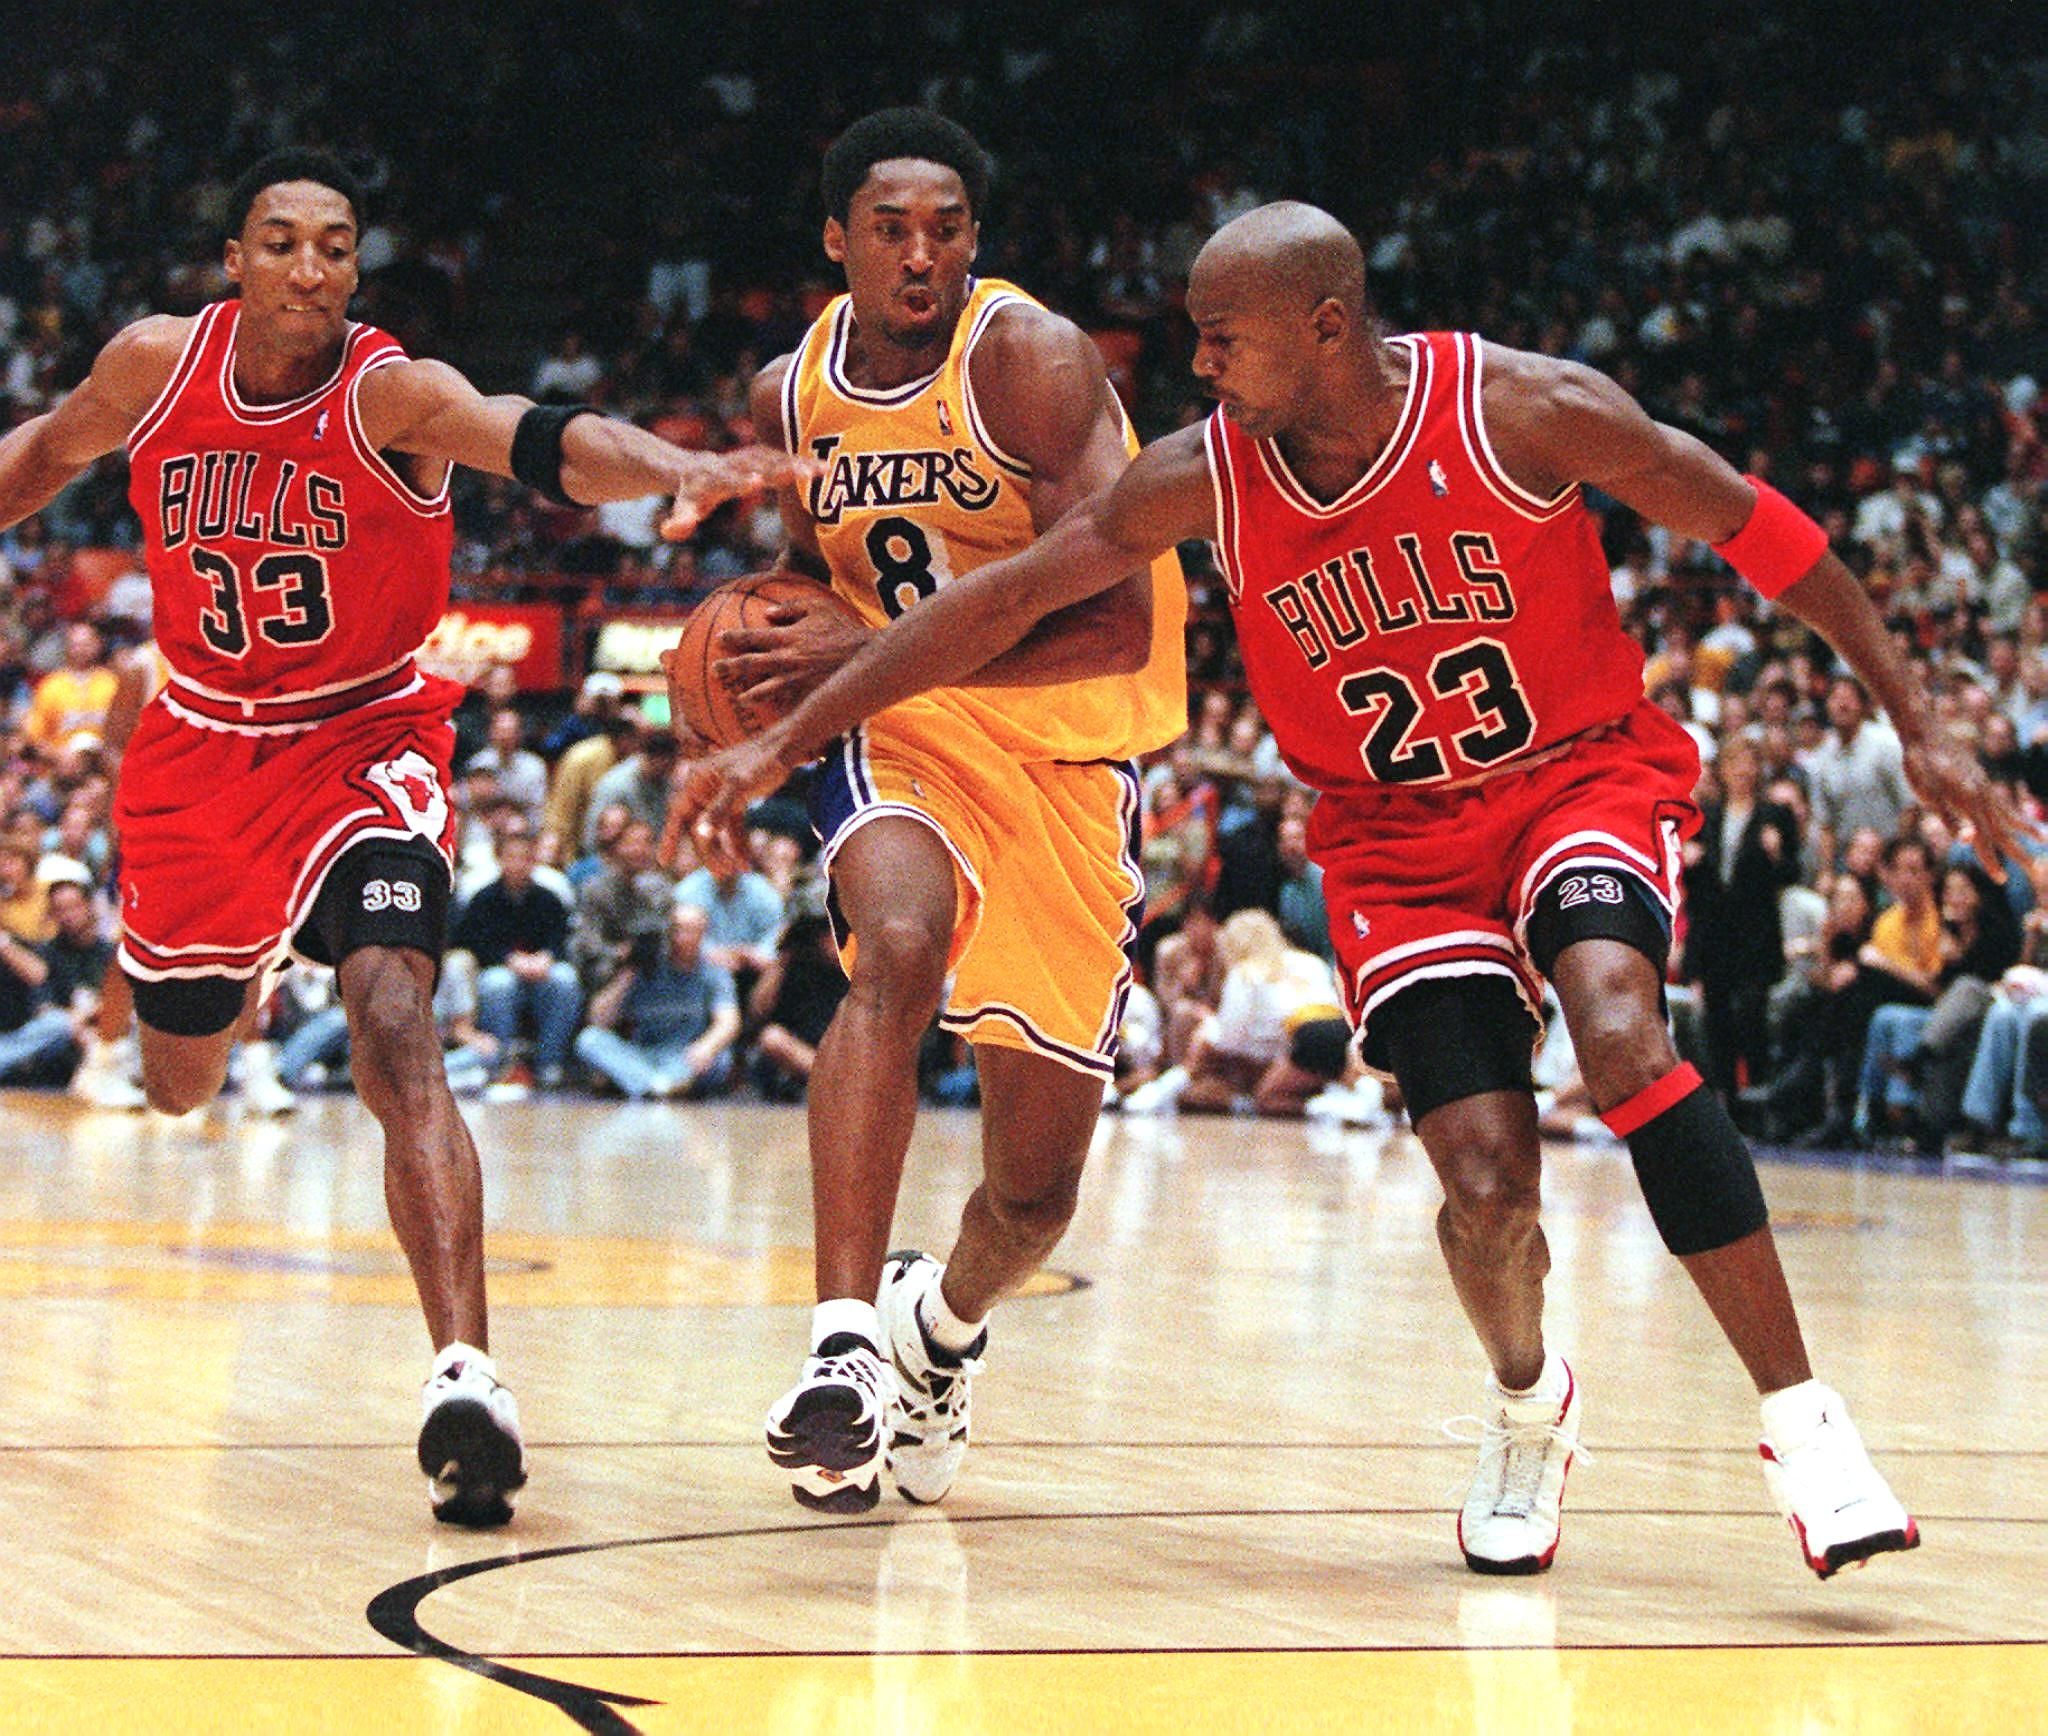 Download Kobe Bryant competing with Michael Jordan Wallpaper  Wallpapers com